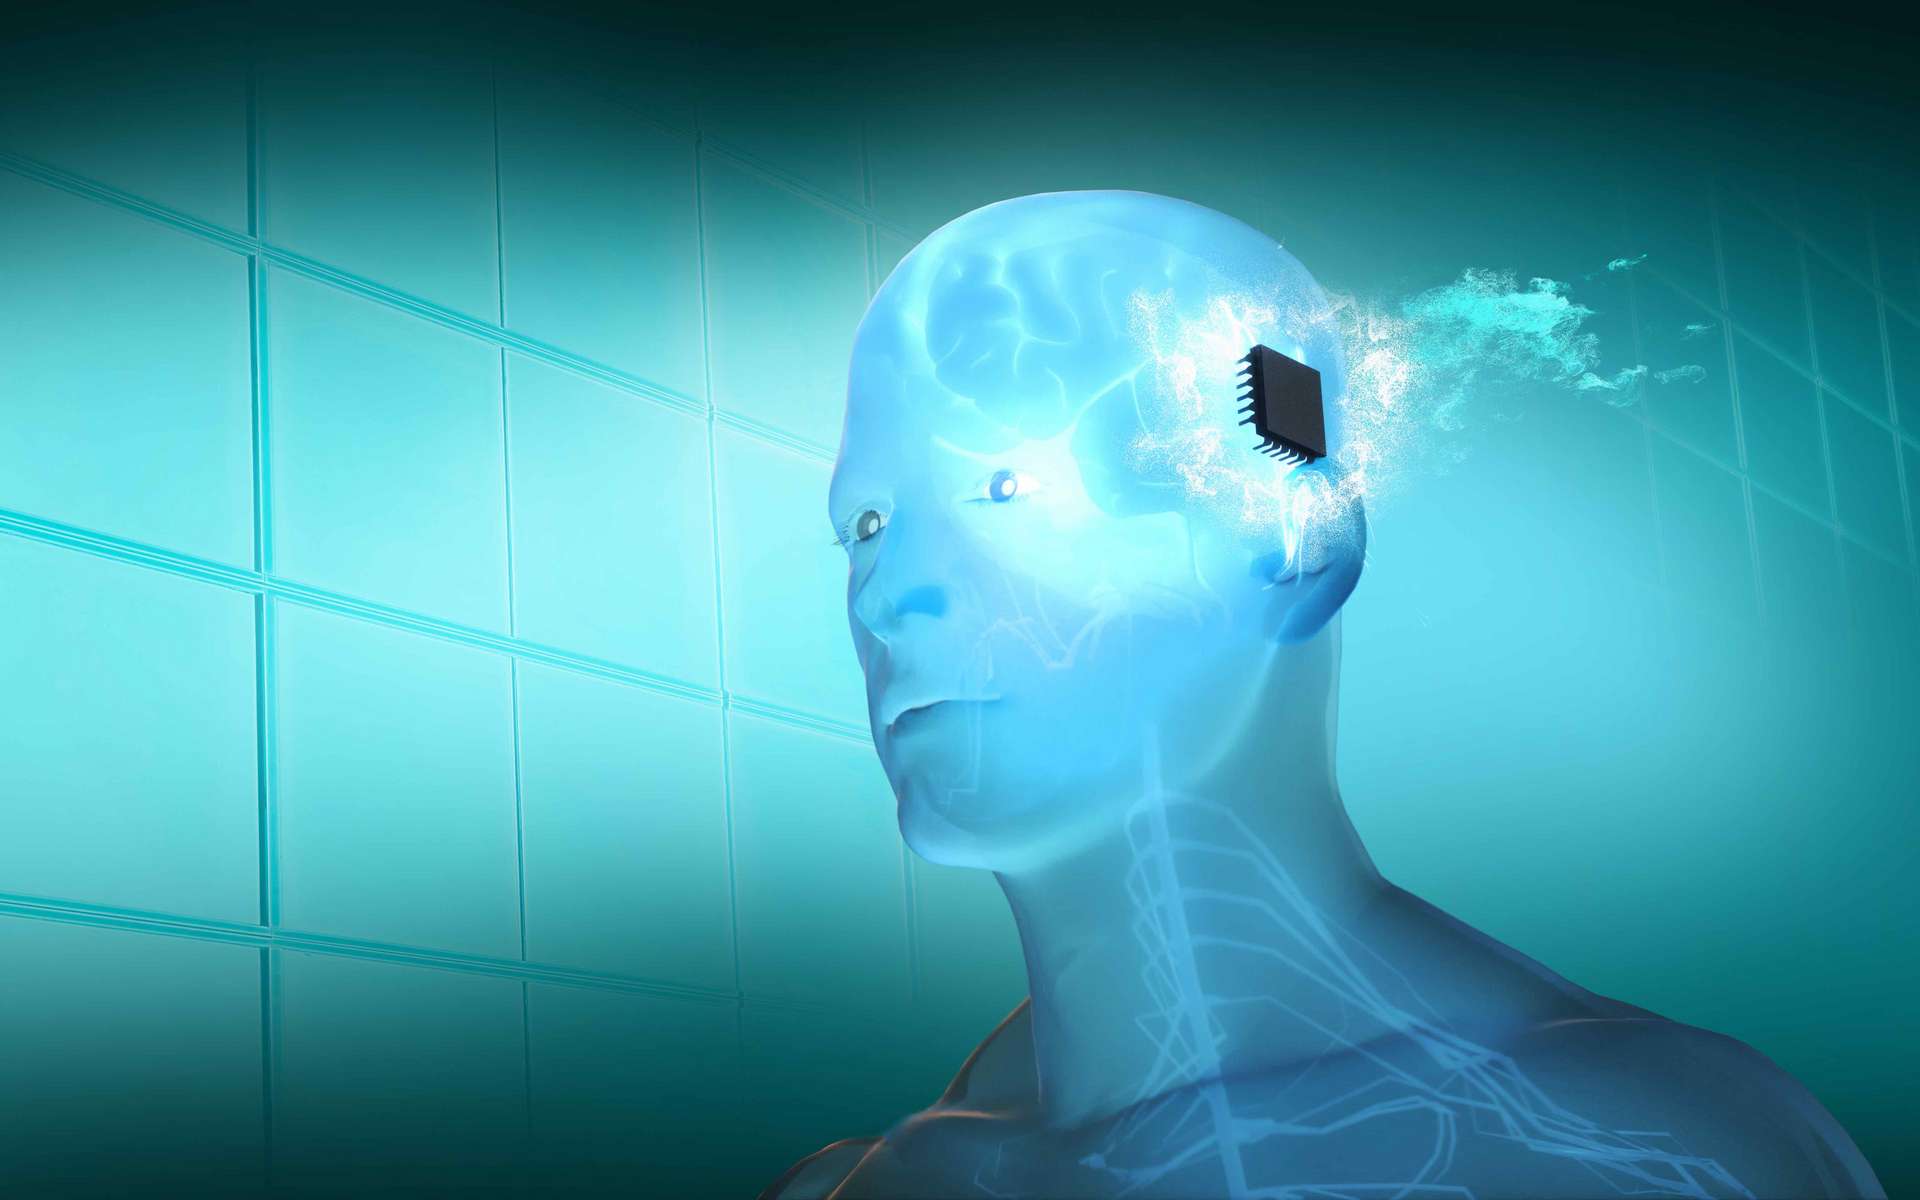 Les implants cérébraux sont-ils dangereux pour la santé ? Un essai clinique fournit un début de réponse